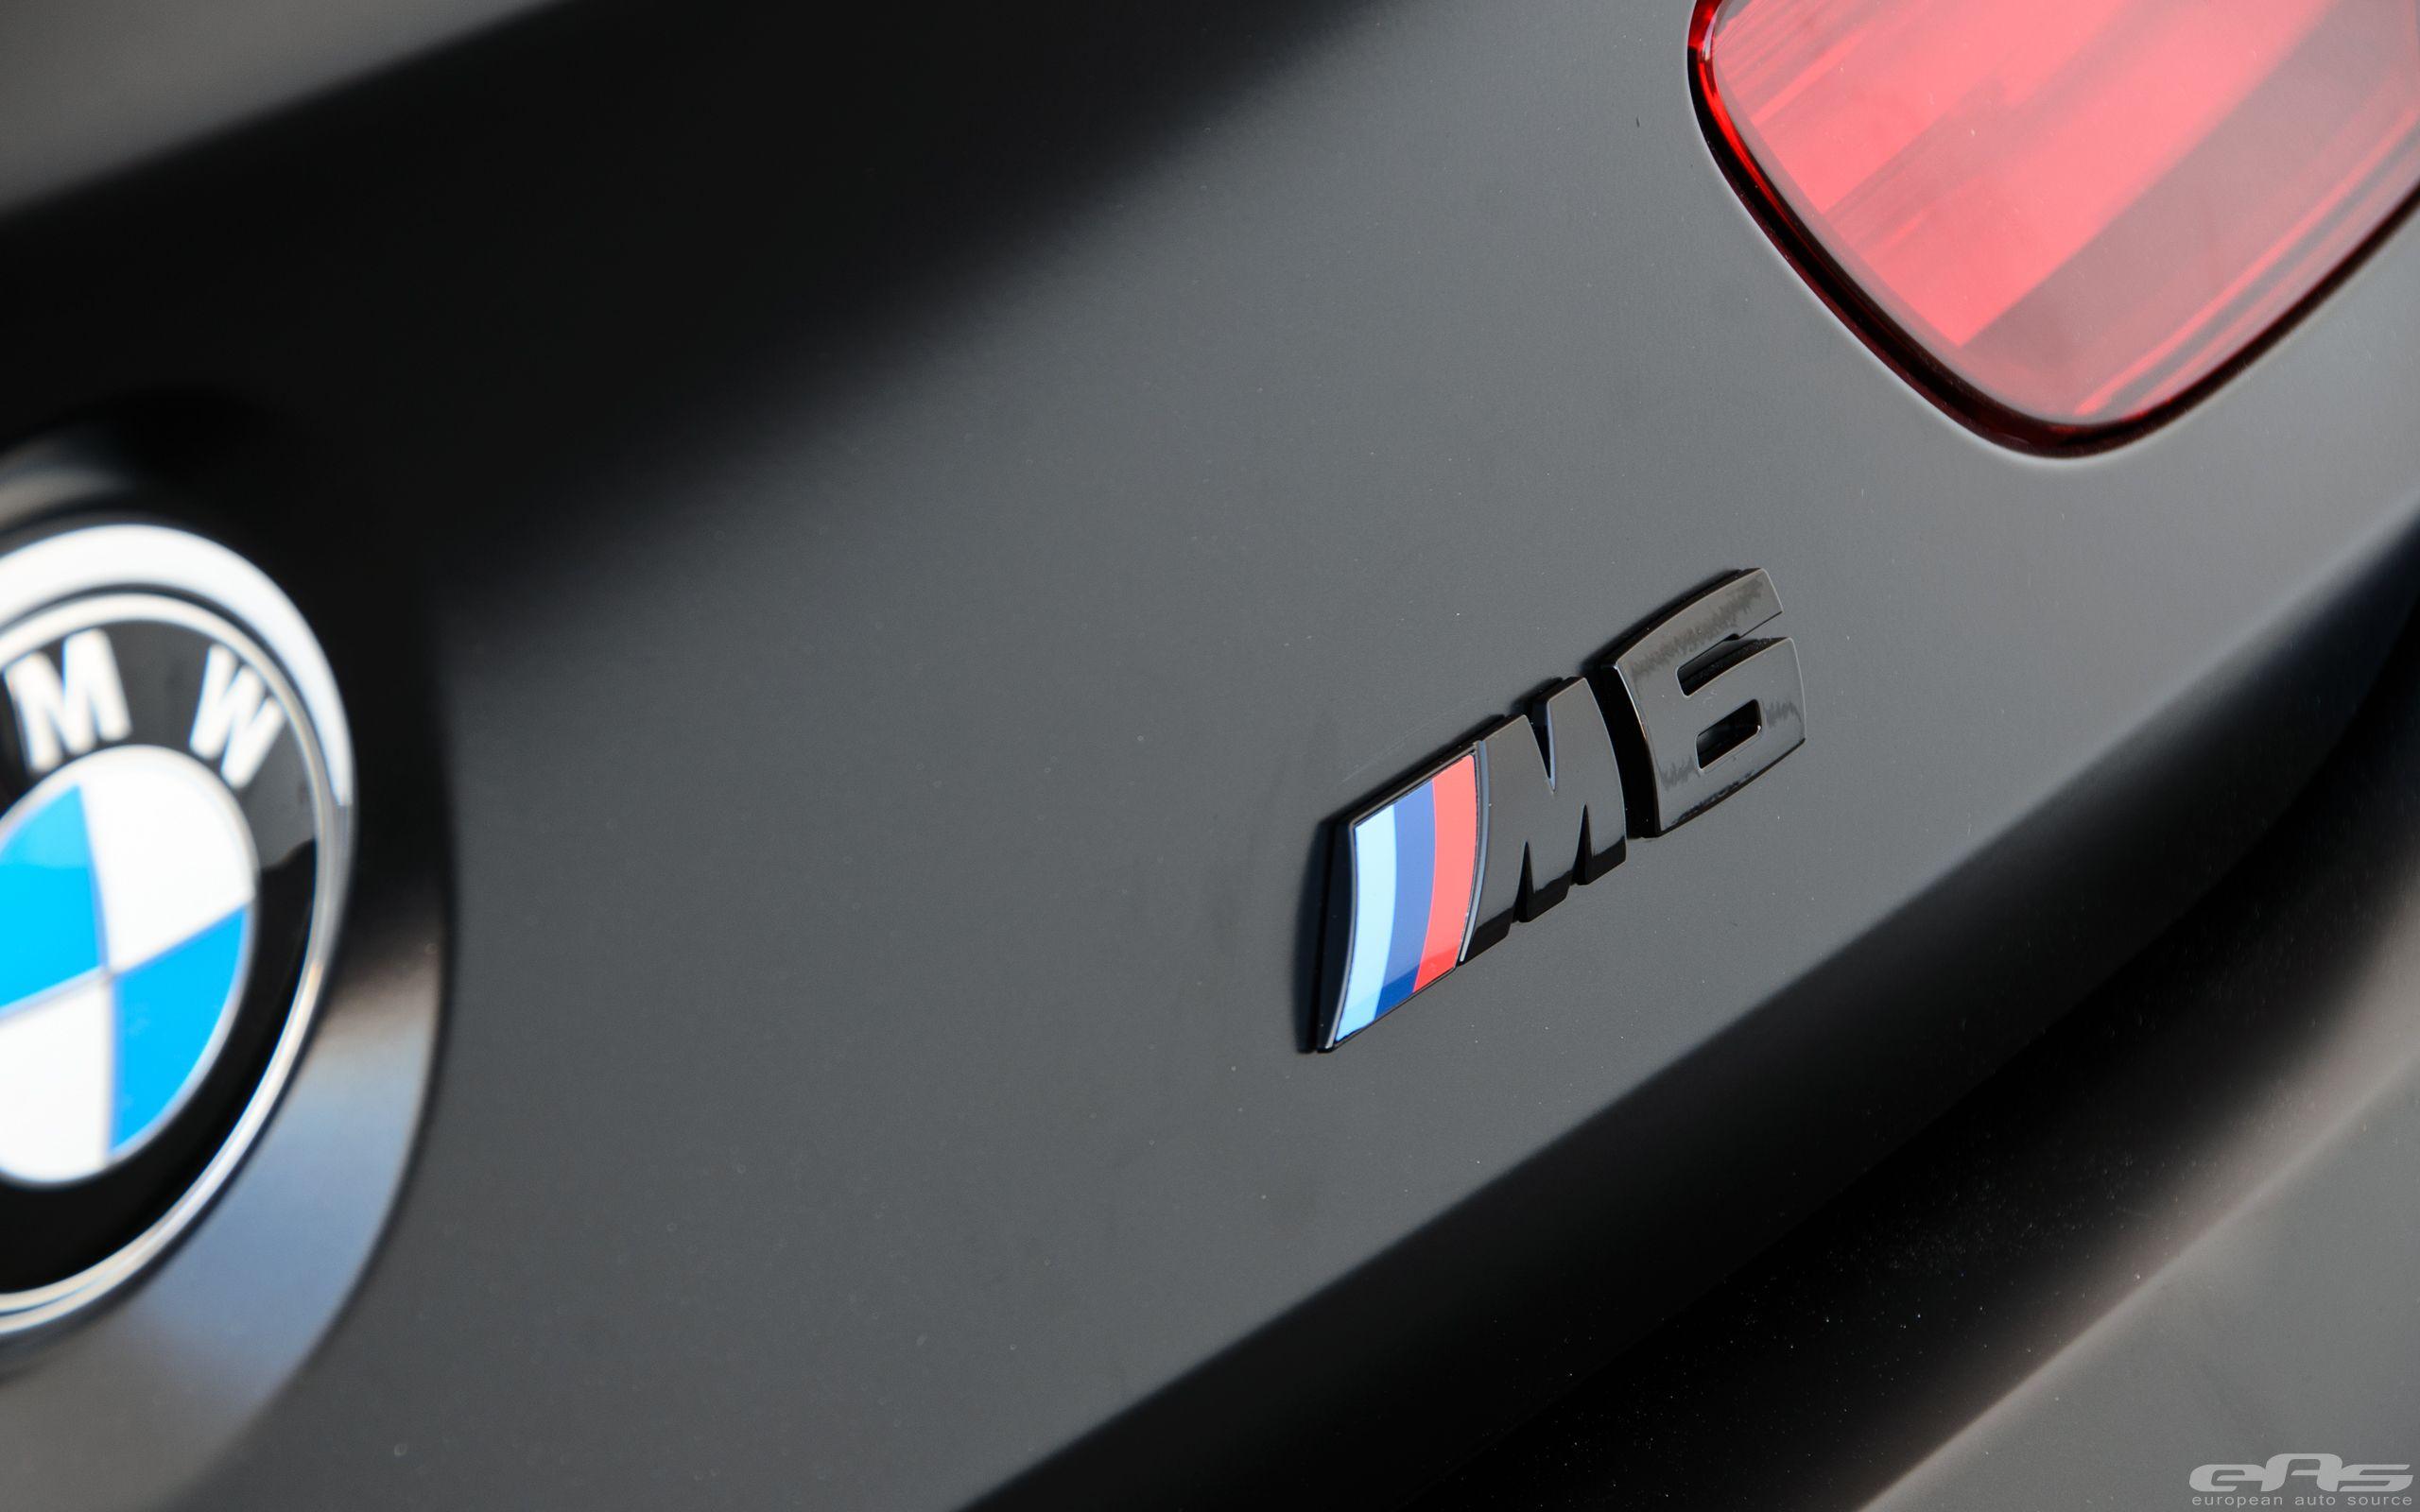 BMW M6 Logo - Bmw M6 Logo.co